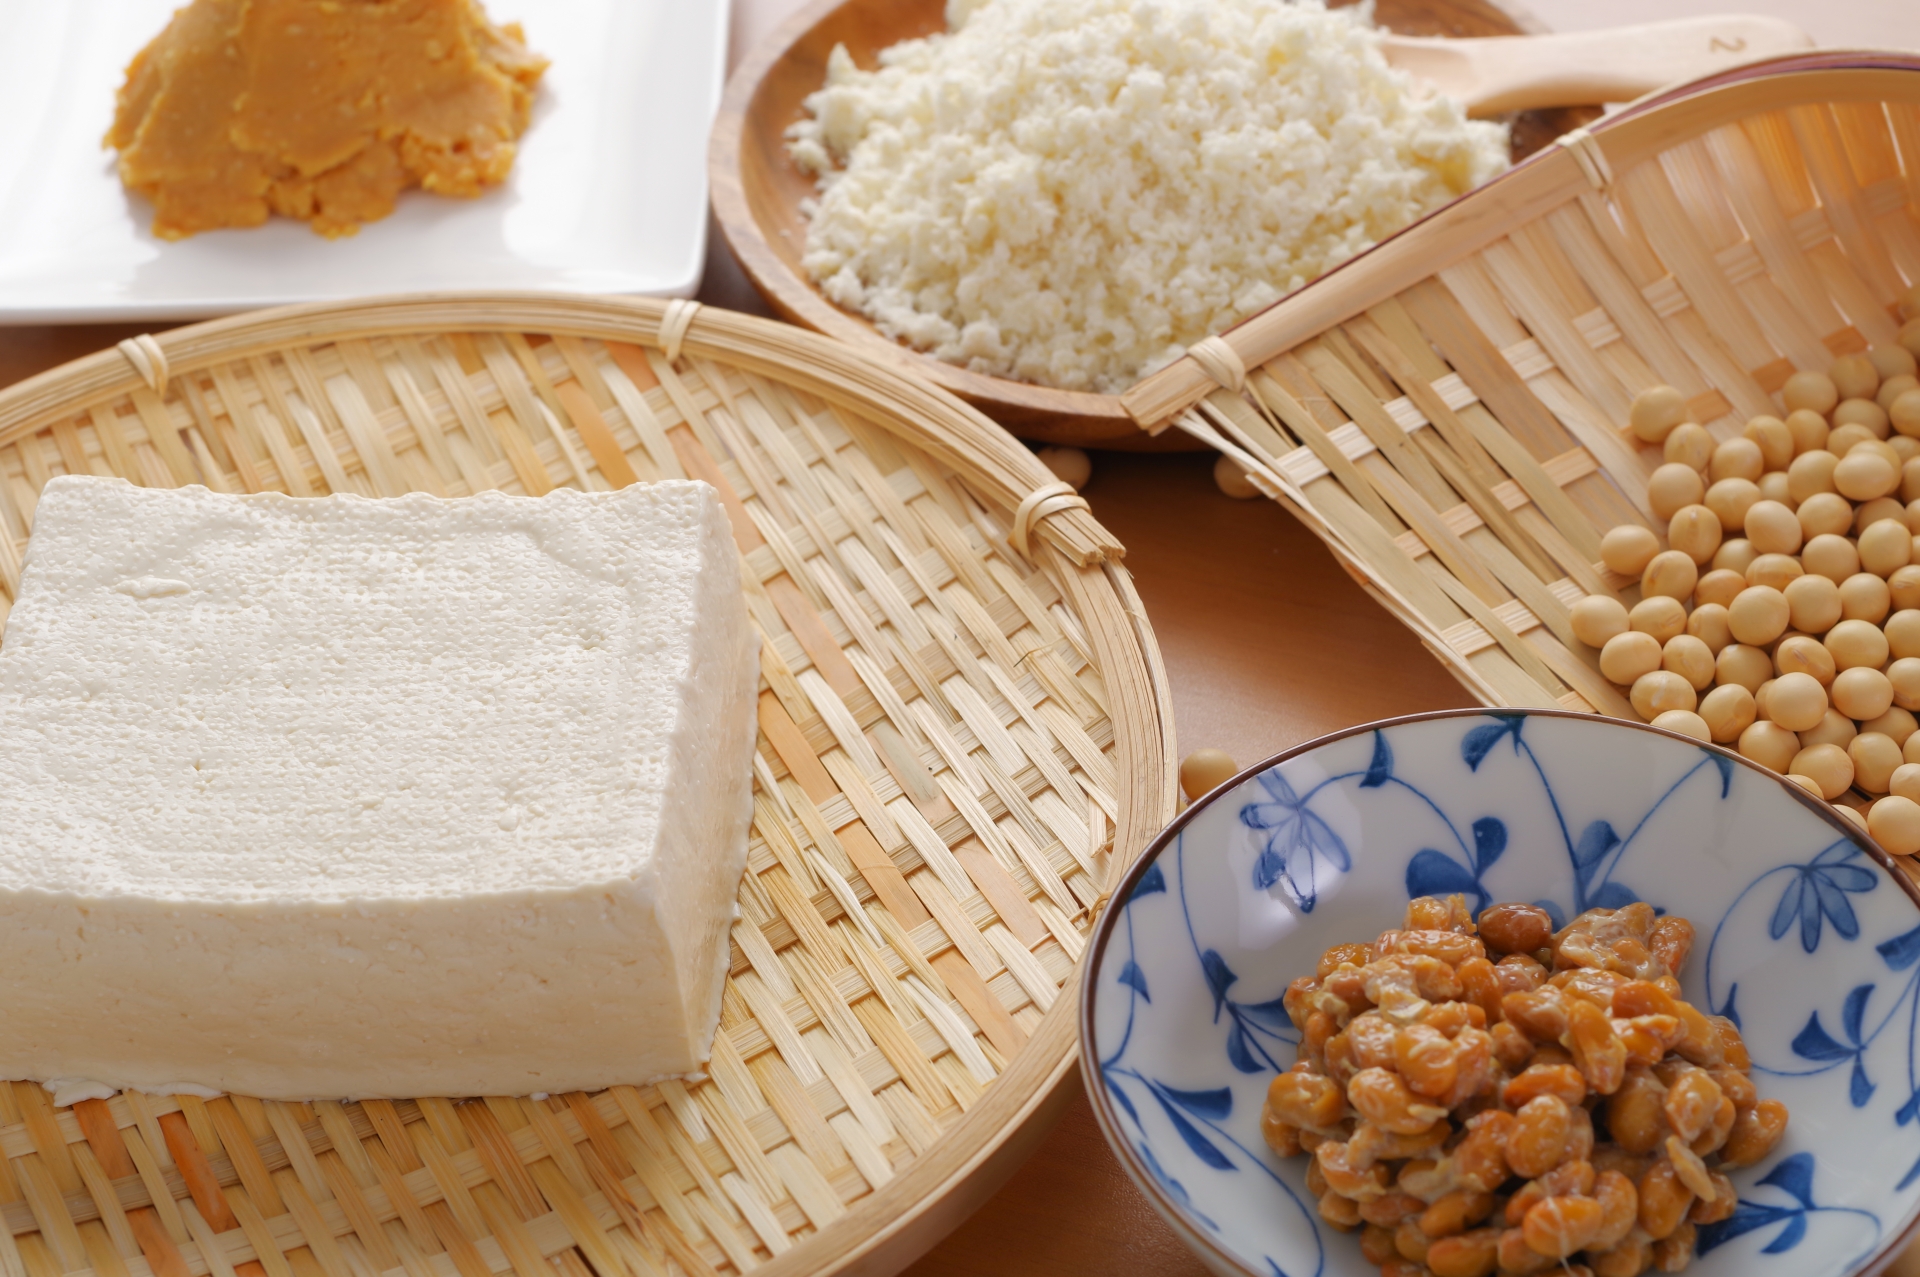 ざるの上の豆腐や大豆、皿の上の納豆やおから、味噌などの植物性タンパク質食材